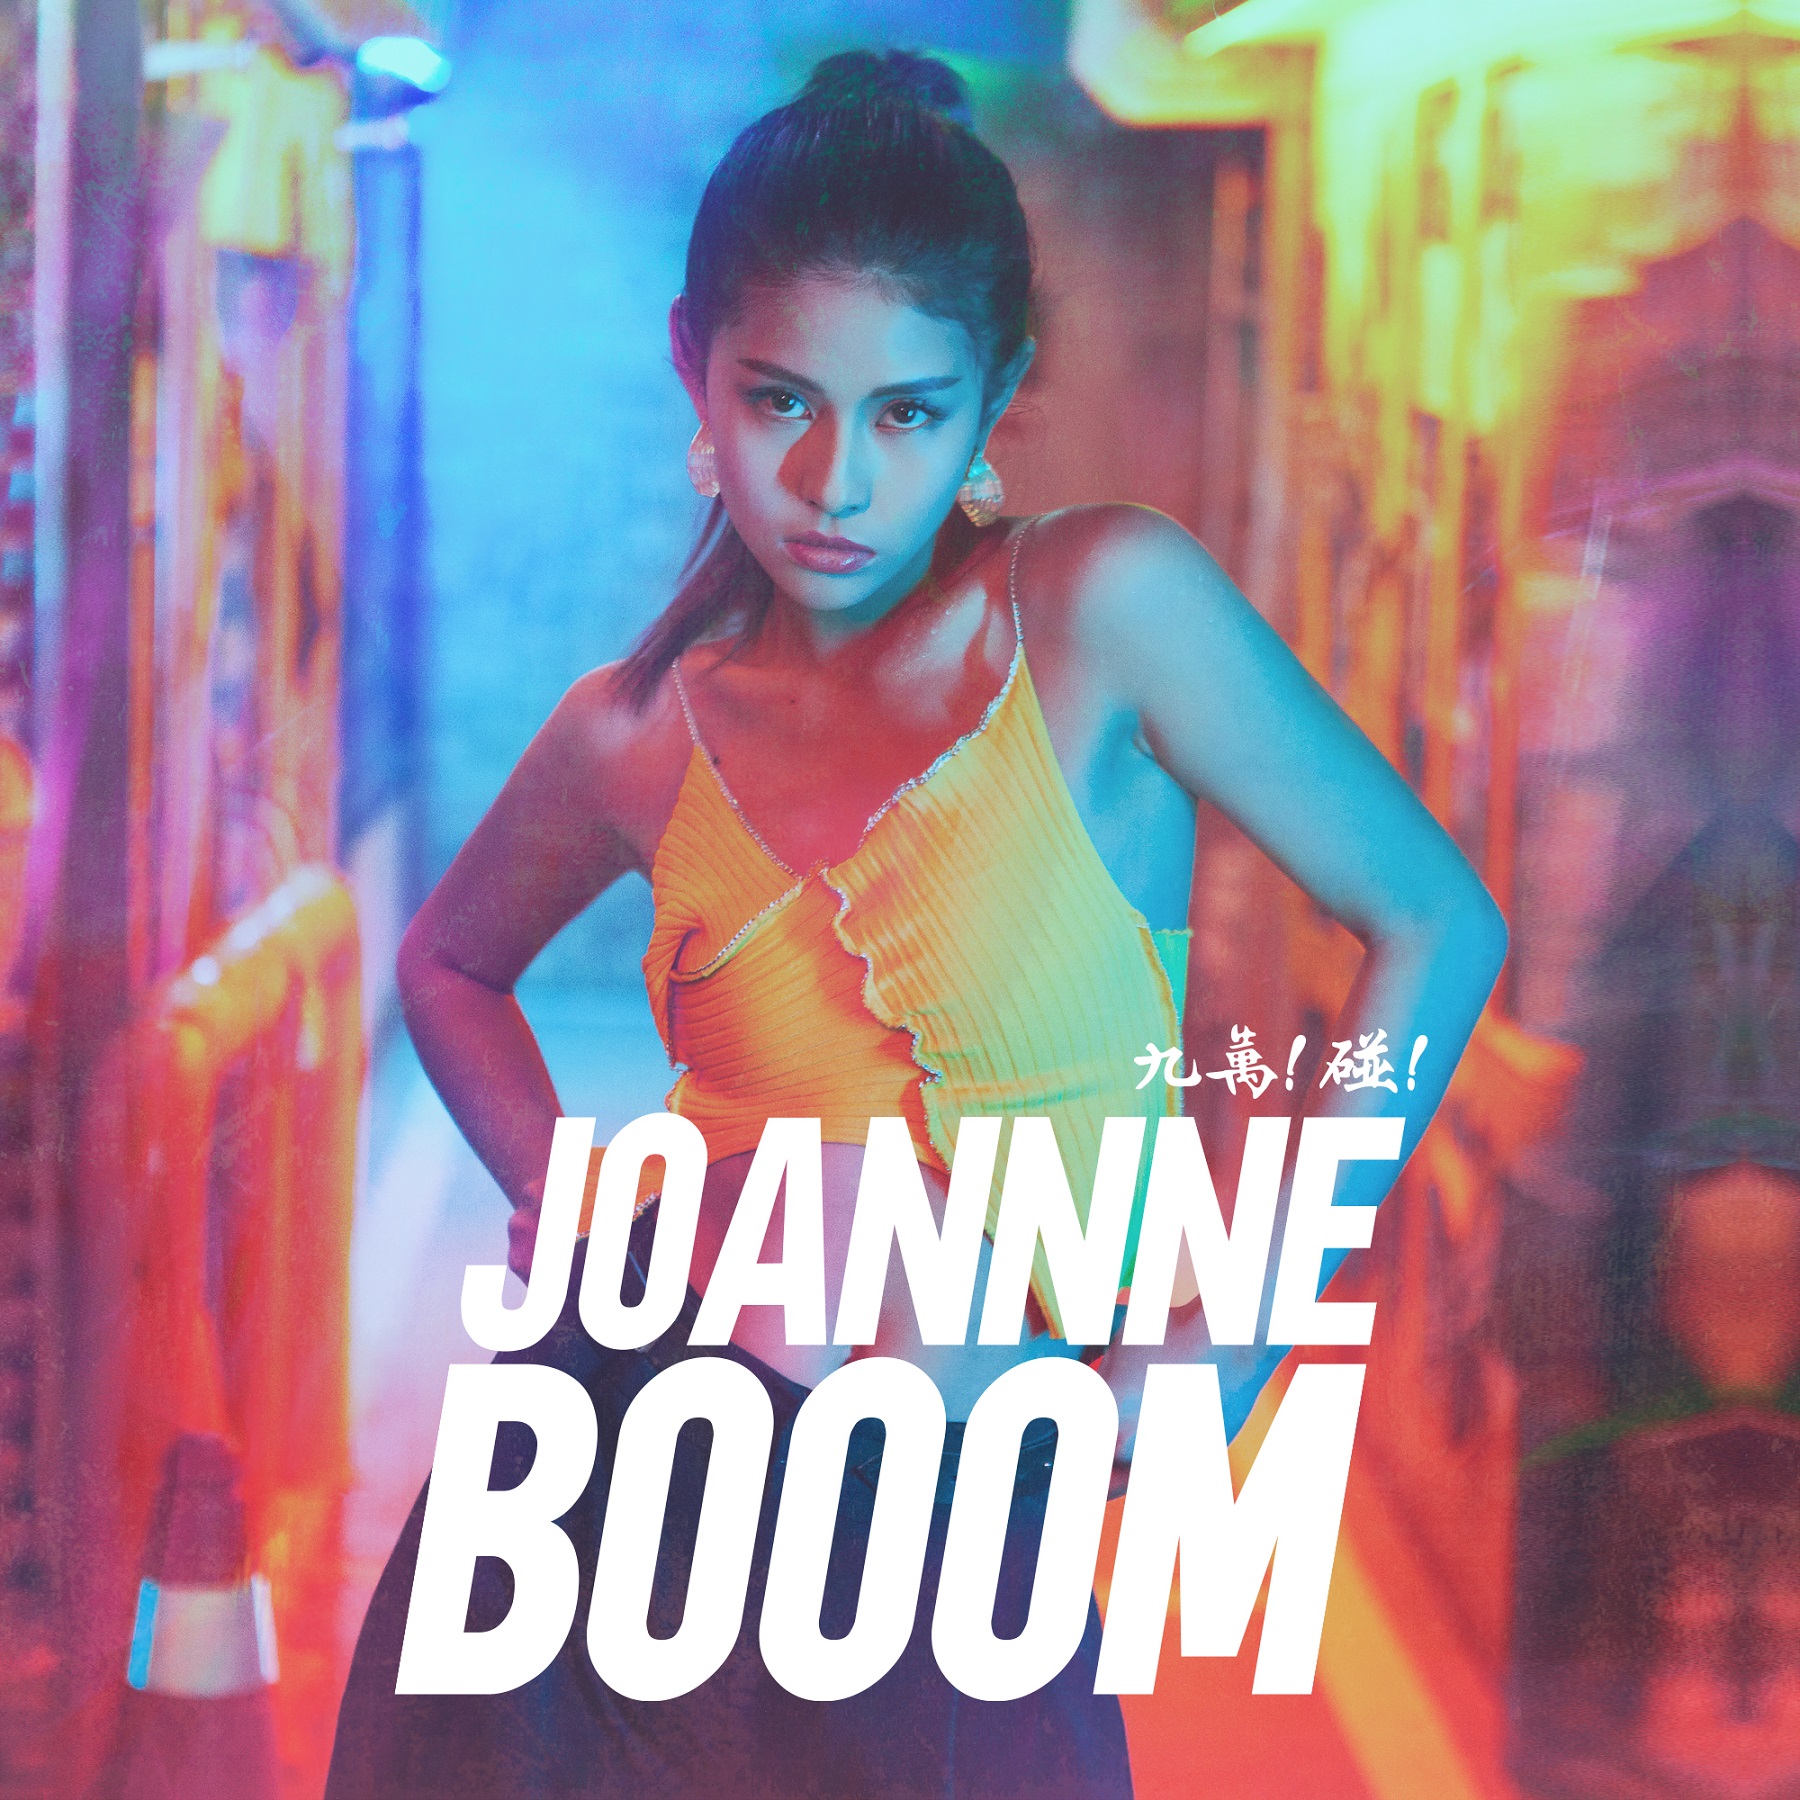 Joannne泳恩發行首張個人EP《九萬！碰！》 21歲少女分享娛樂時代生存指南